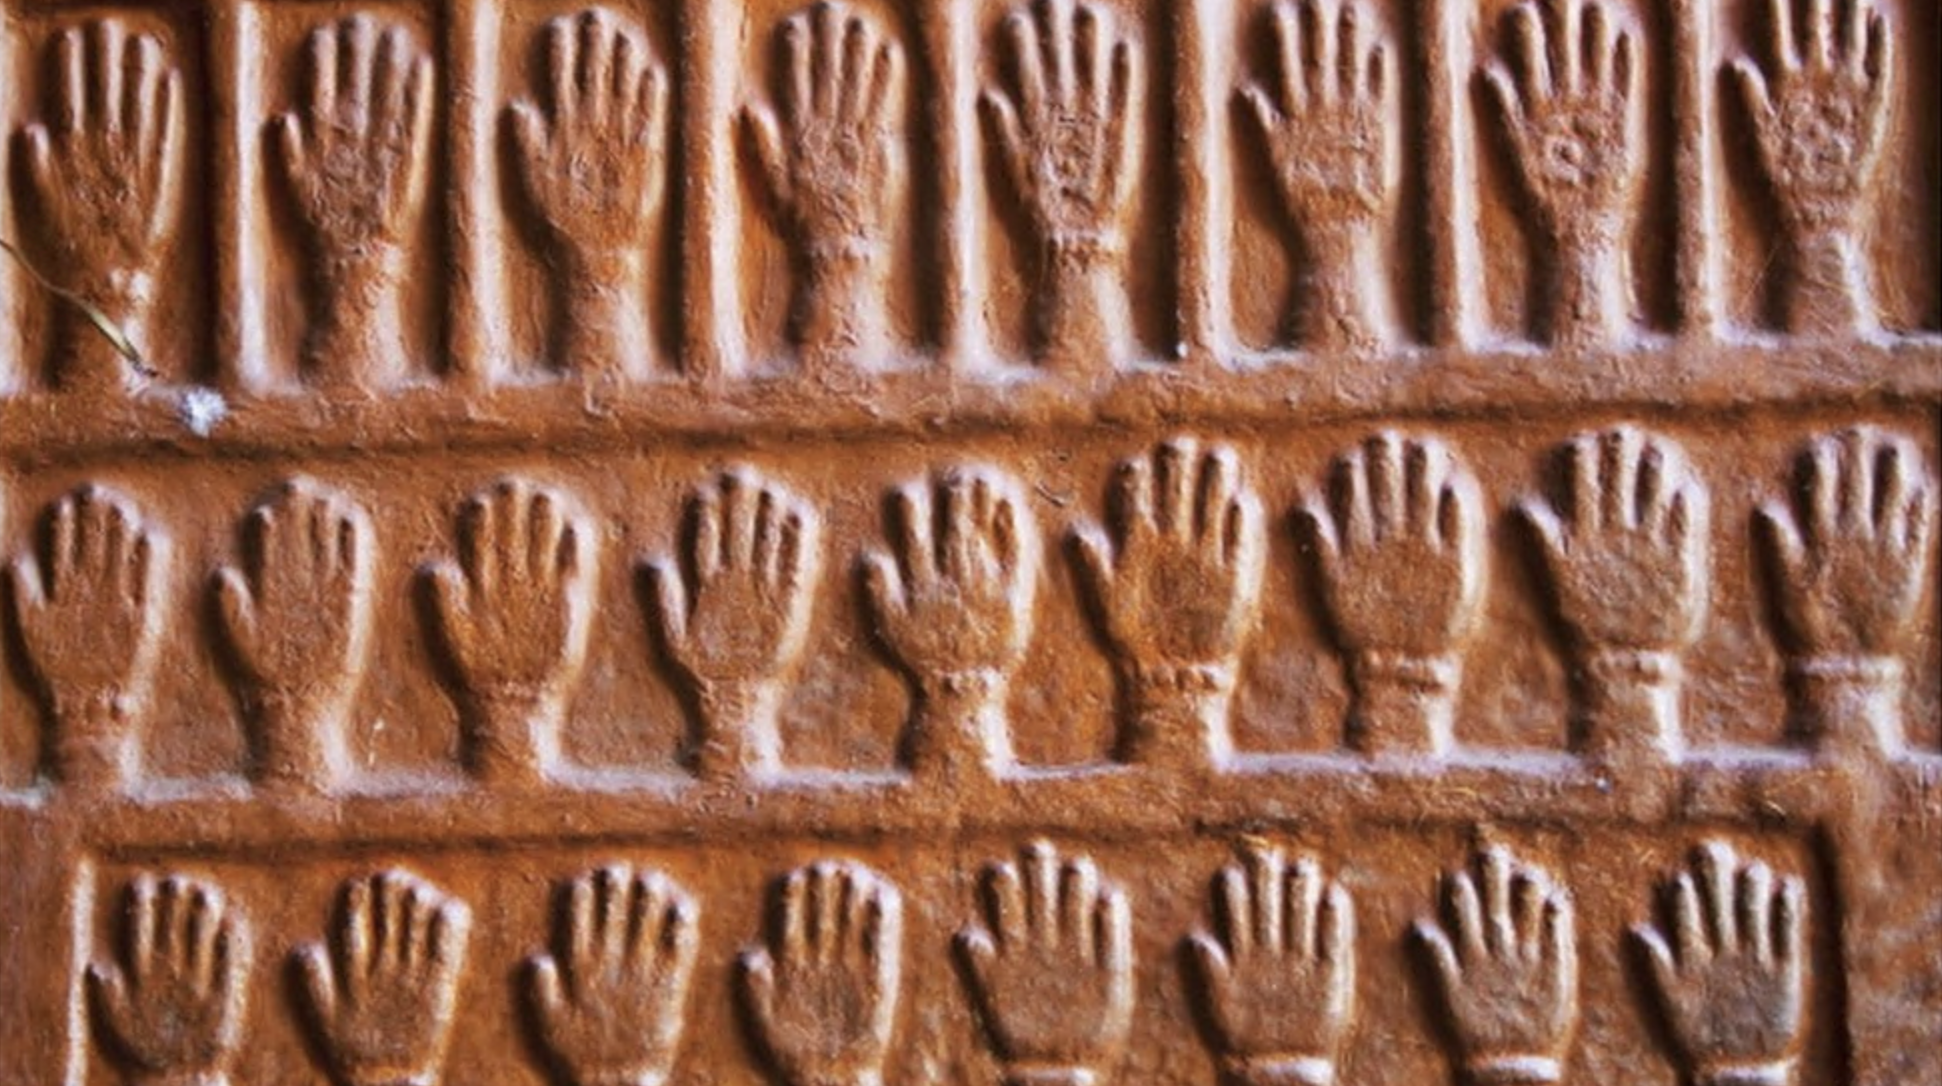 Mãos em memória das mulheres que cometeram o sati nas paredes de um forte no Rajastão (norte da Índia)